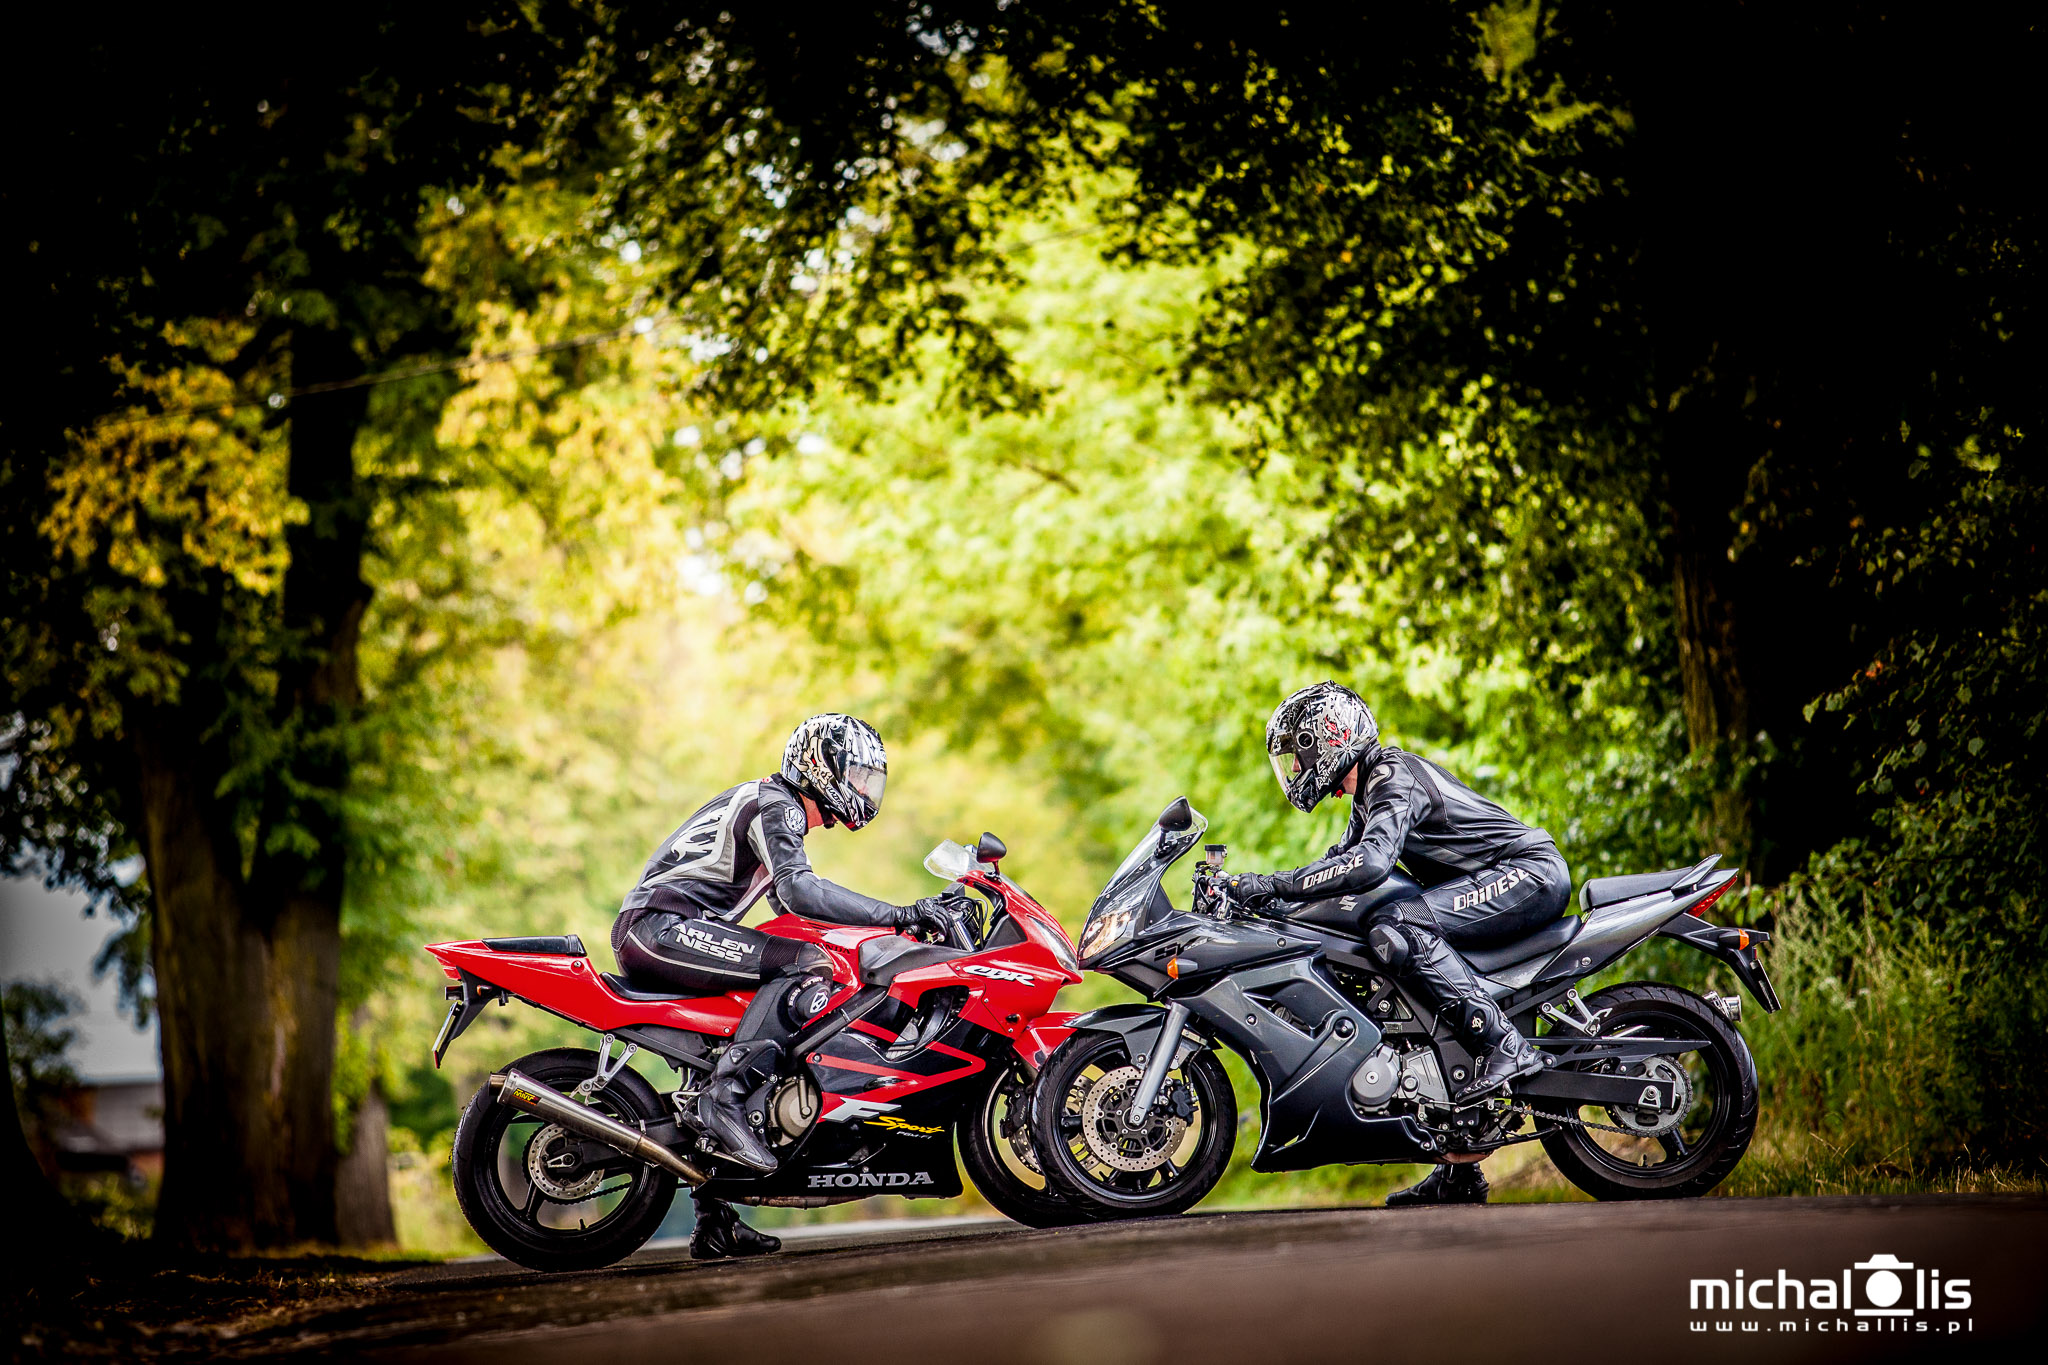 sesja motocyklowa wrocław sesja na motocyklu oleśnica pomysł na zdjęcie z motocyklem sesja na motorze sesja zdjęciowa z motocyklem